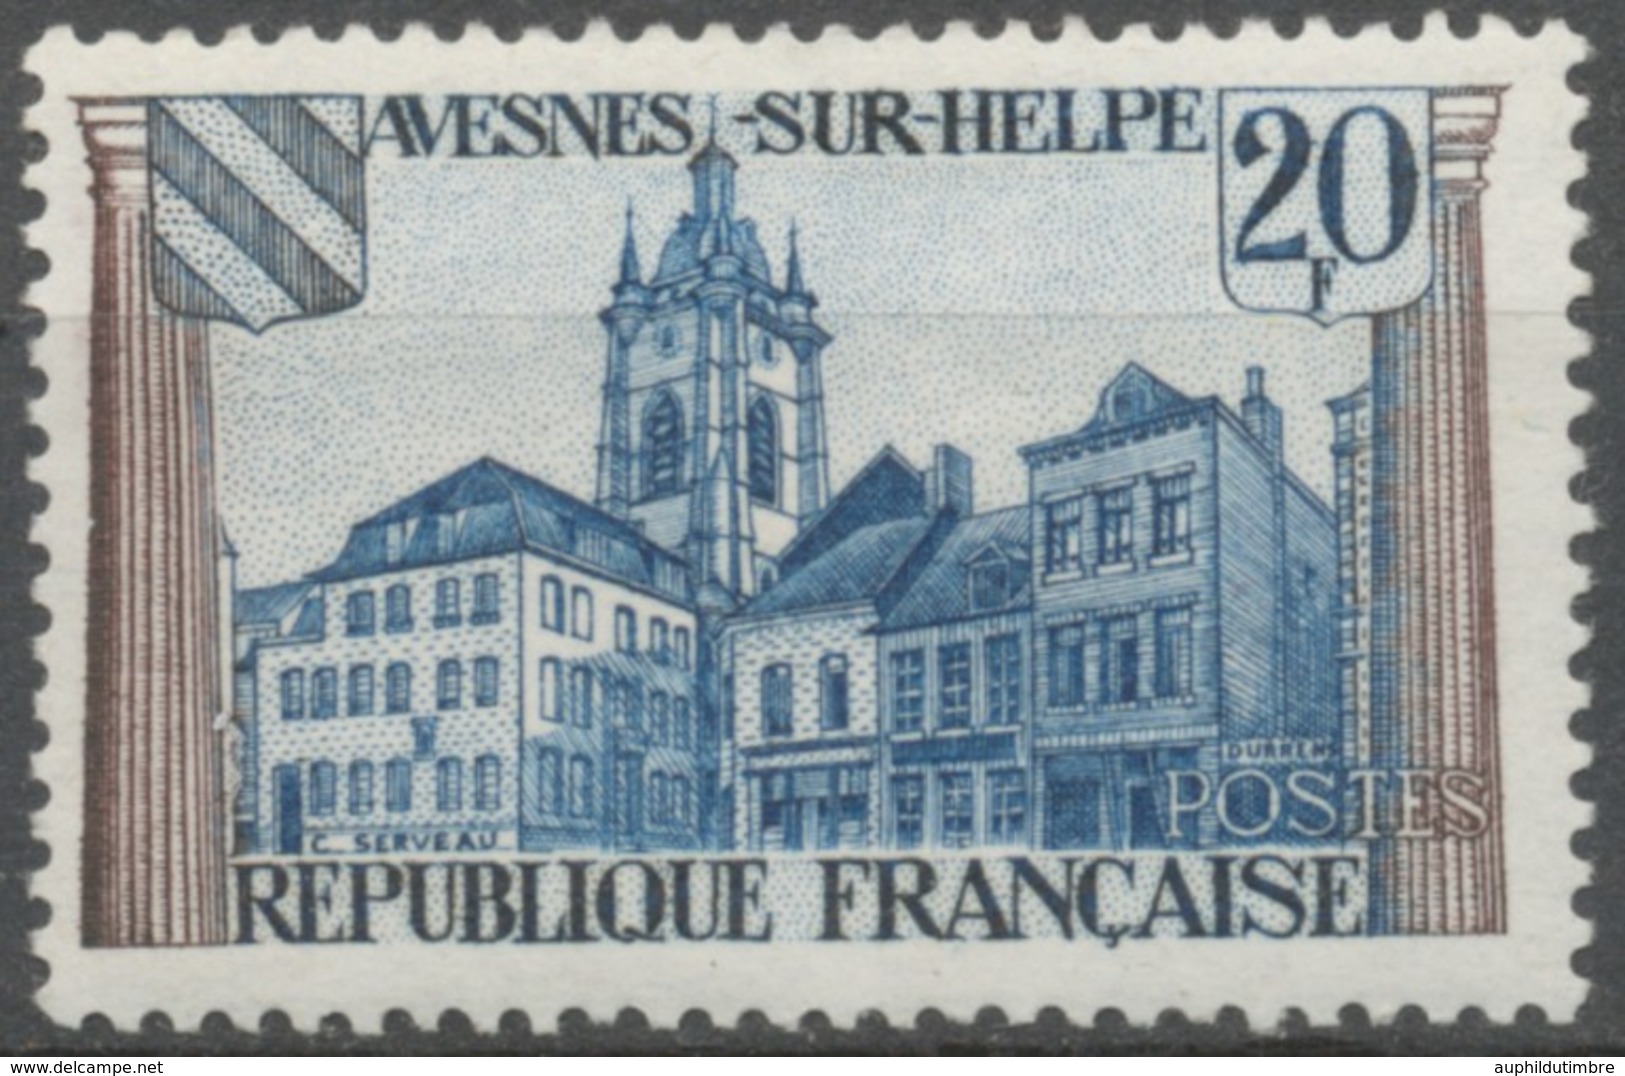 Tricentenaire Du Traité Des Pyrénées. Avesnes-s-Helpe (la Place Guillemin). 20f. Bleu Et Bistre. Neuf Luxe ** Y1221 - Nuevos